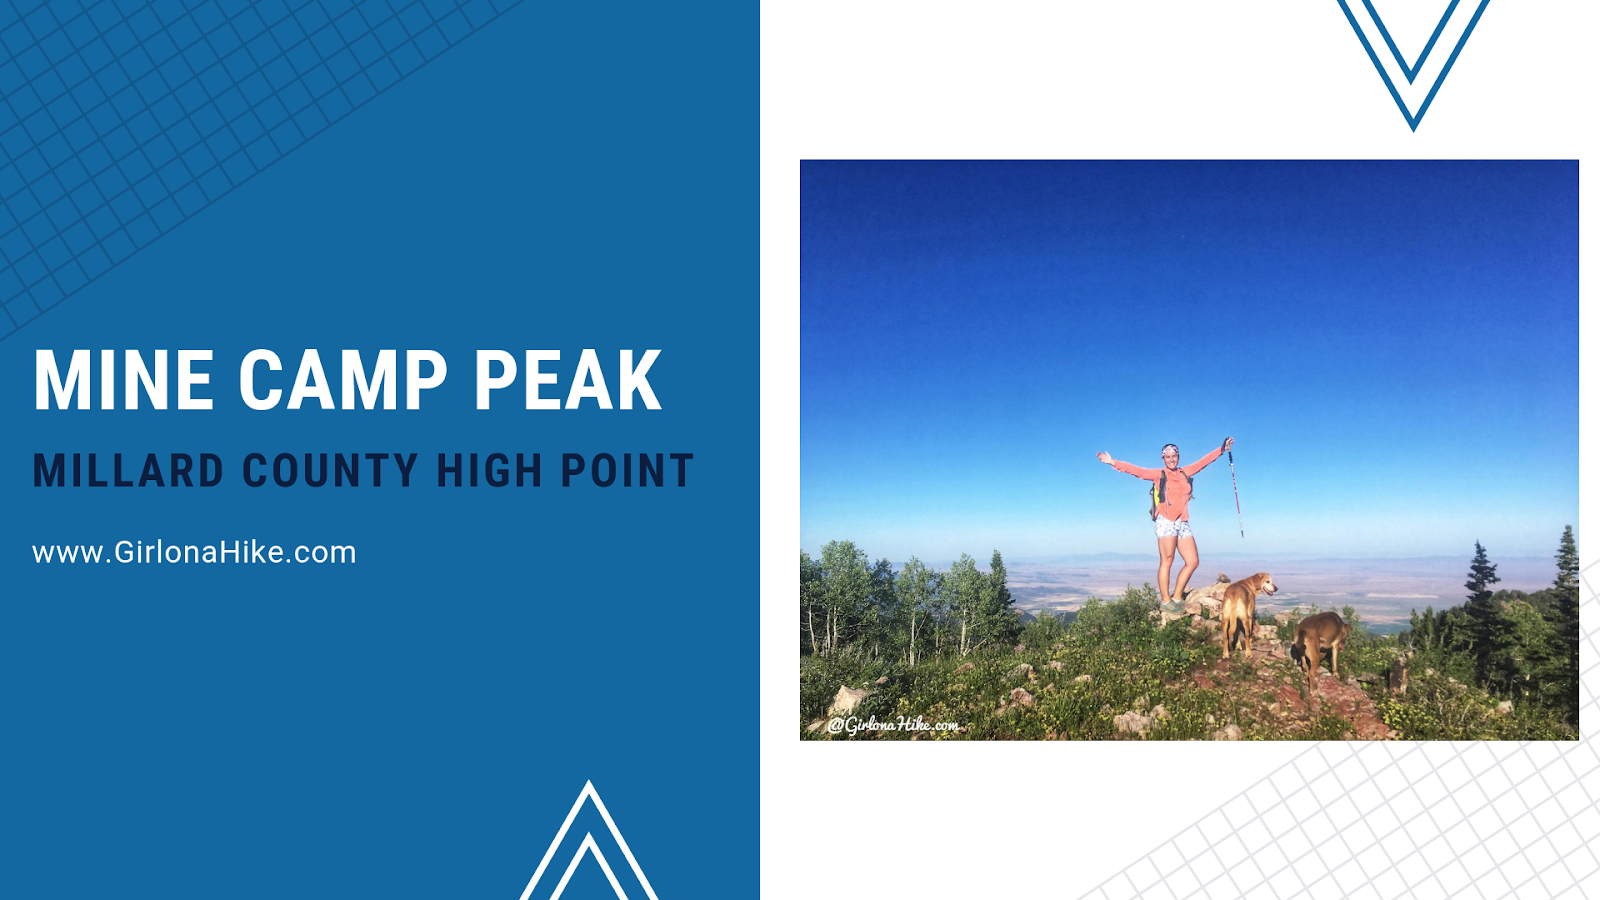 Mine Camp Peak, Millard County High Point